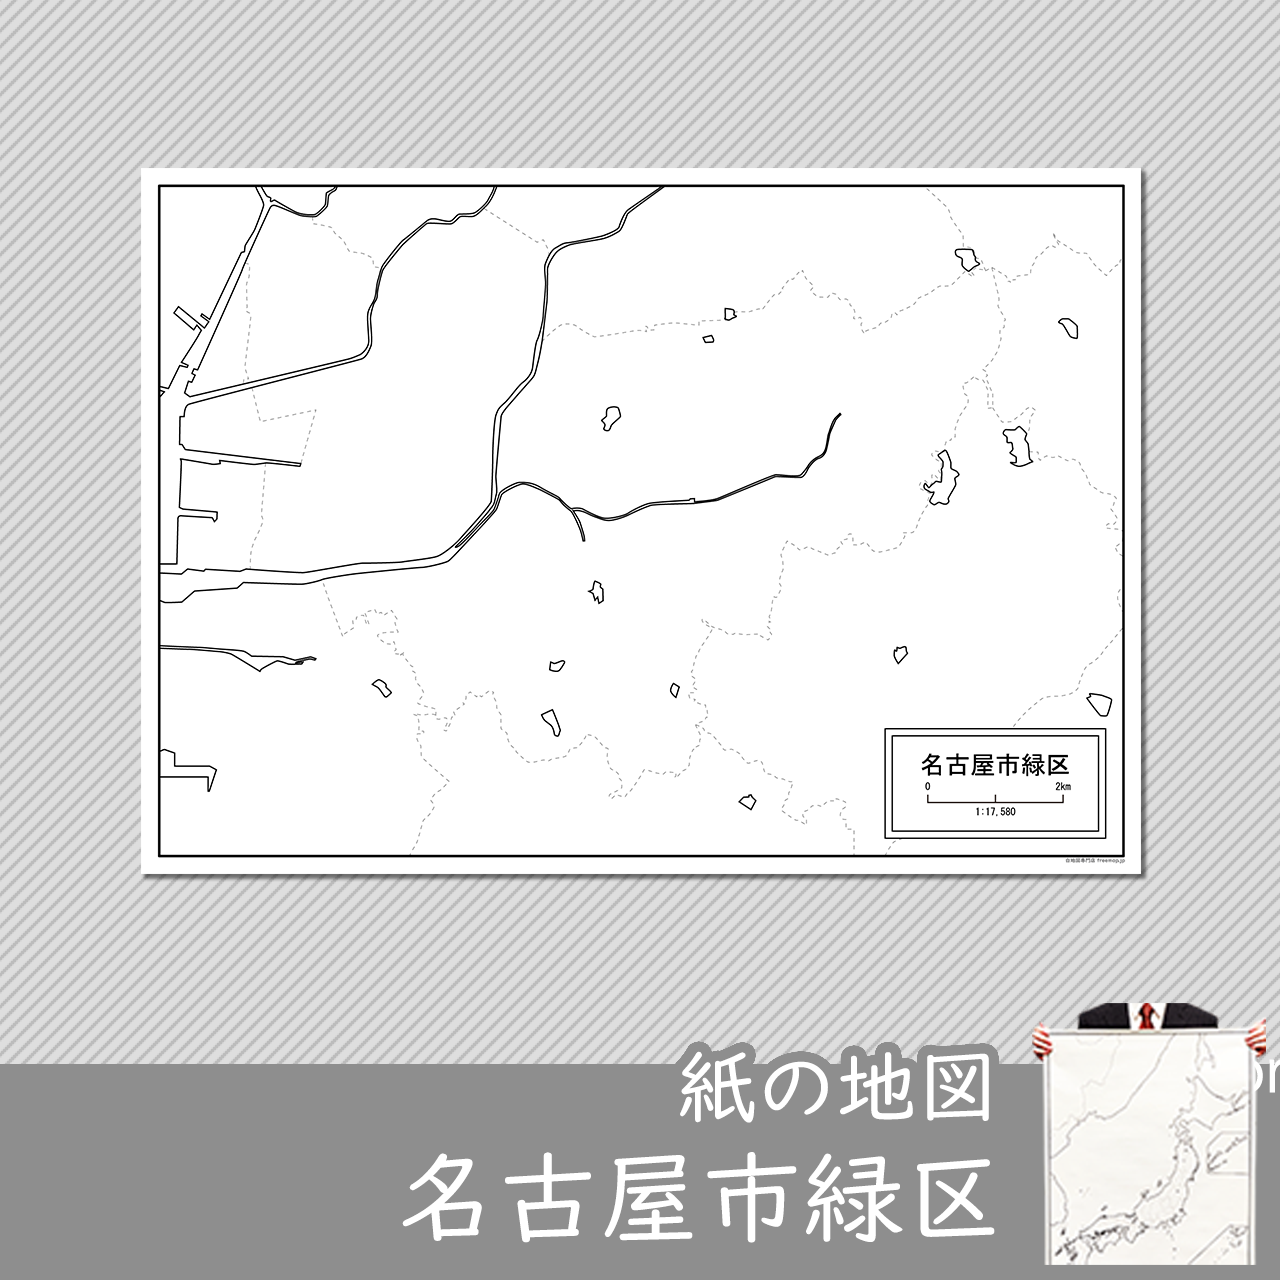 名古屋市緑区の紙の白地図のサムネイル